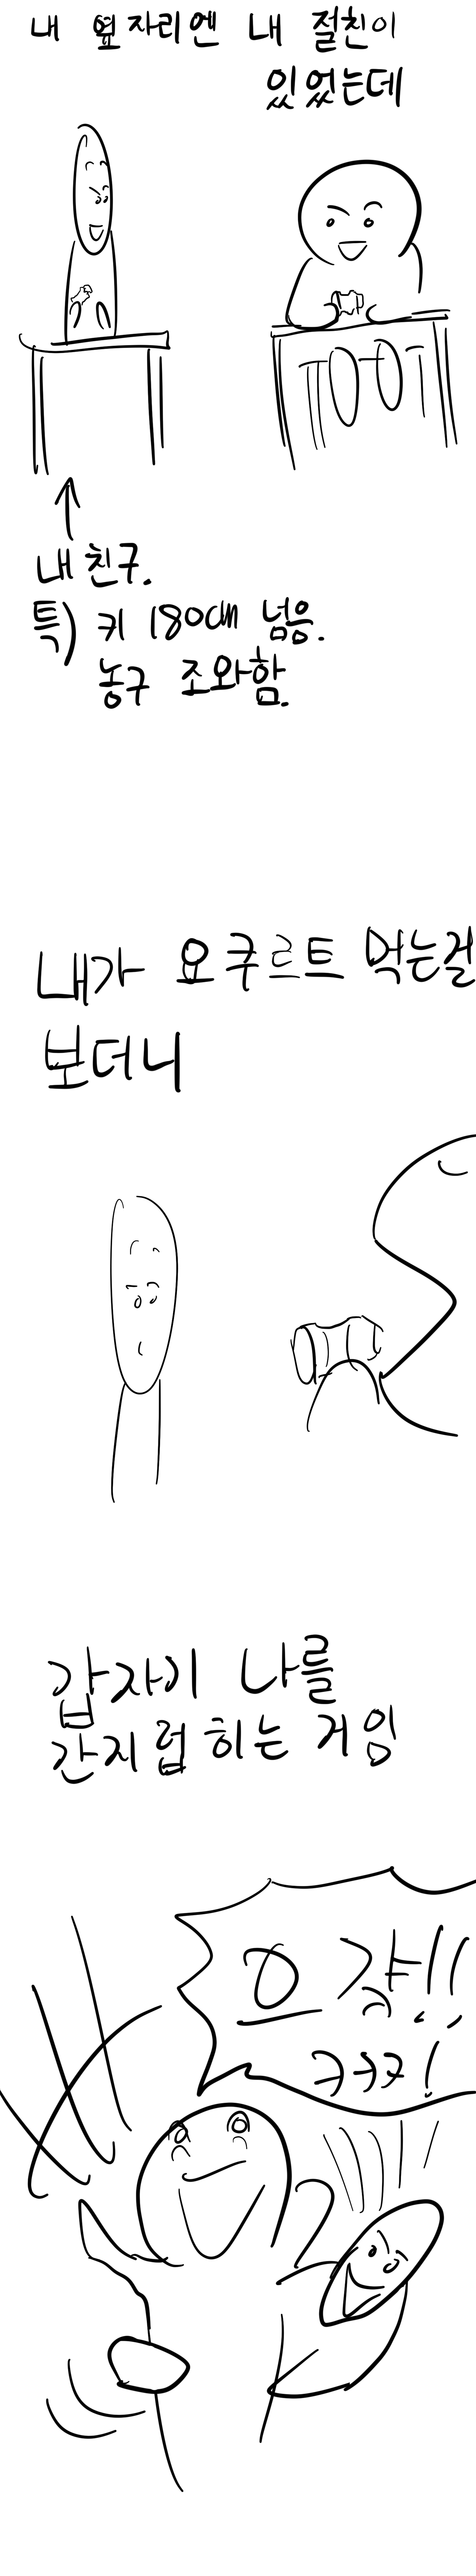 요쿠르트 먹다가 숨막혀 죽을뻔한 만화.manhwa